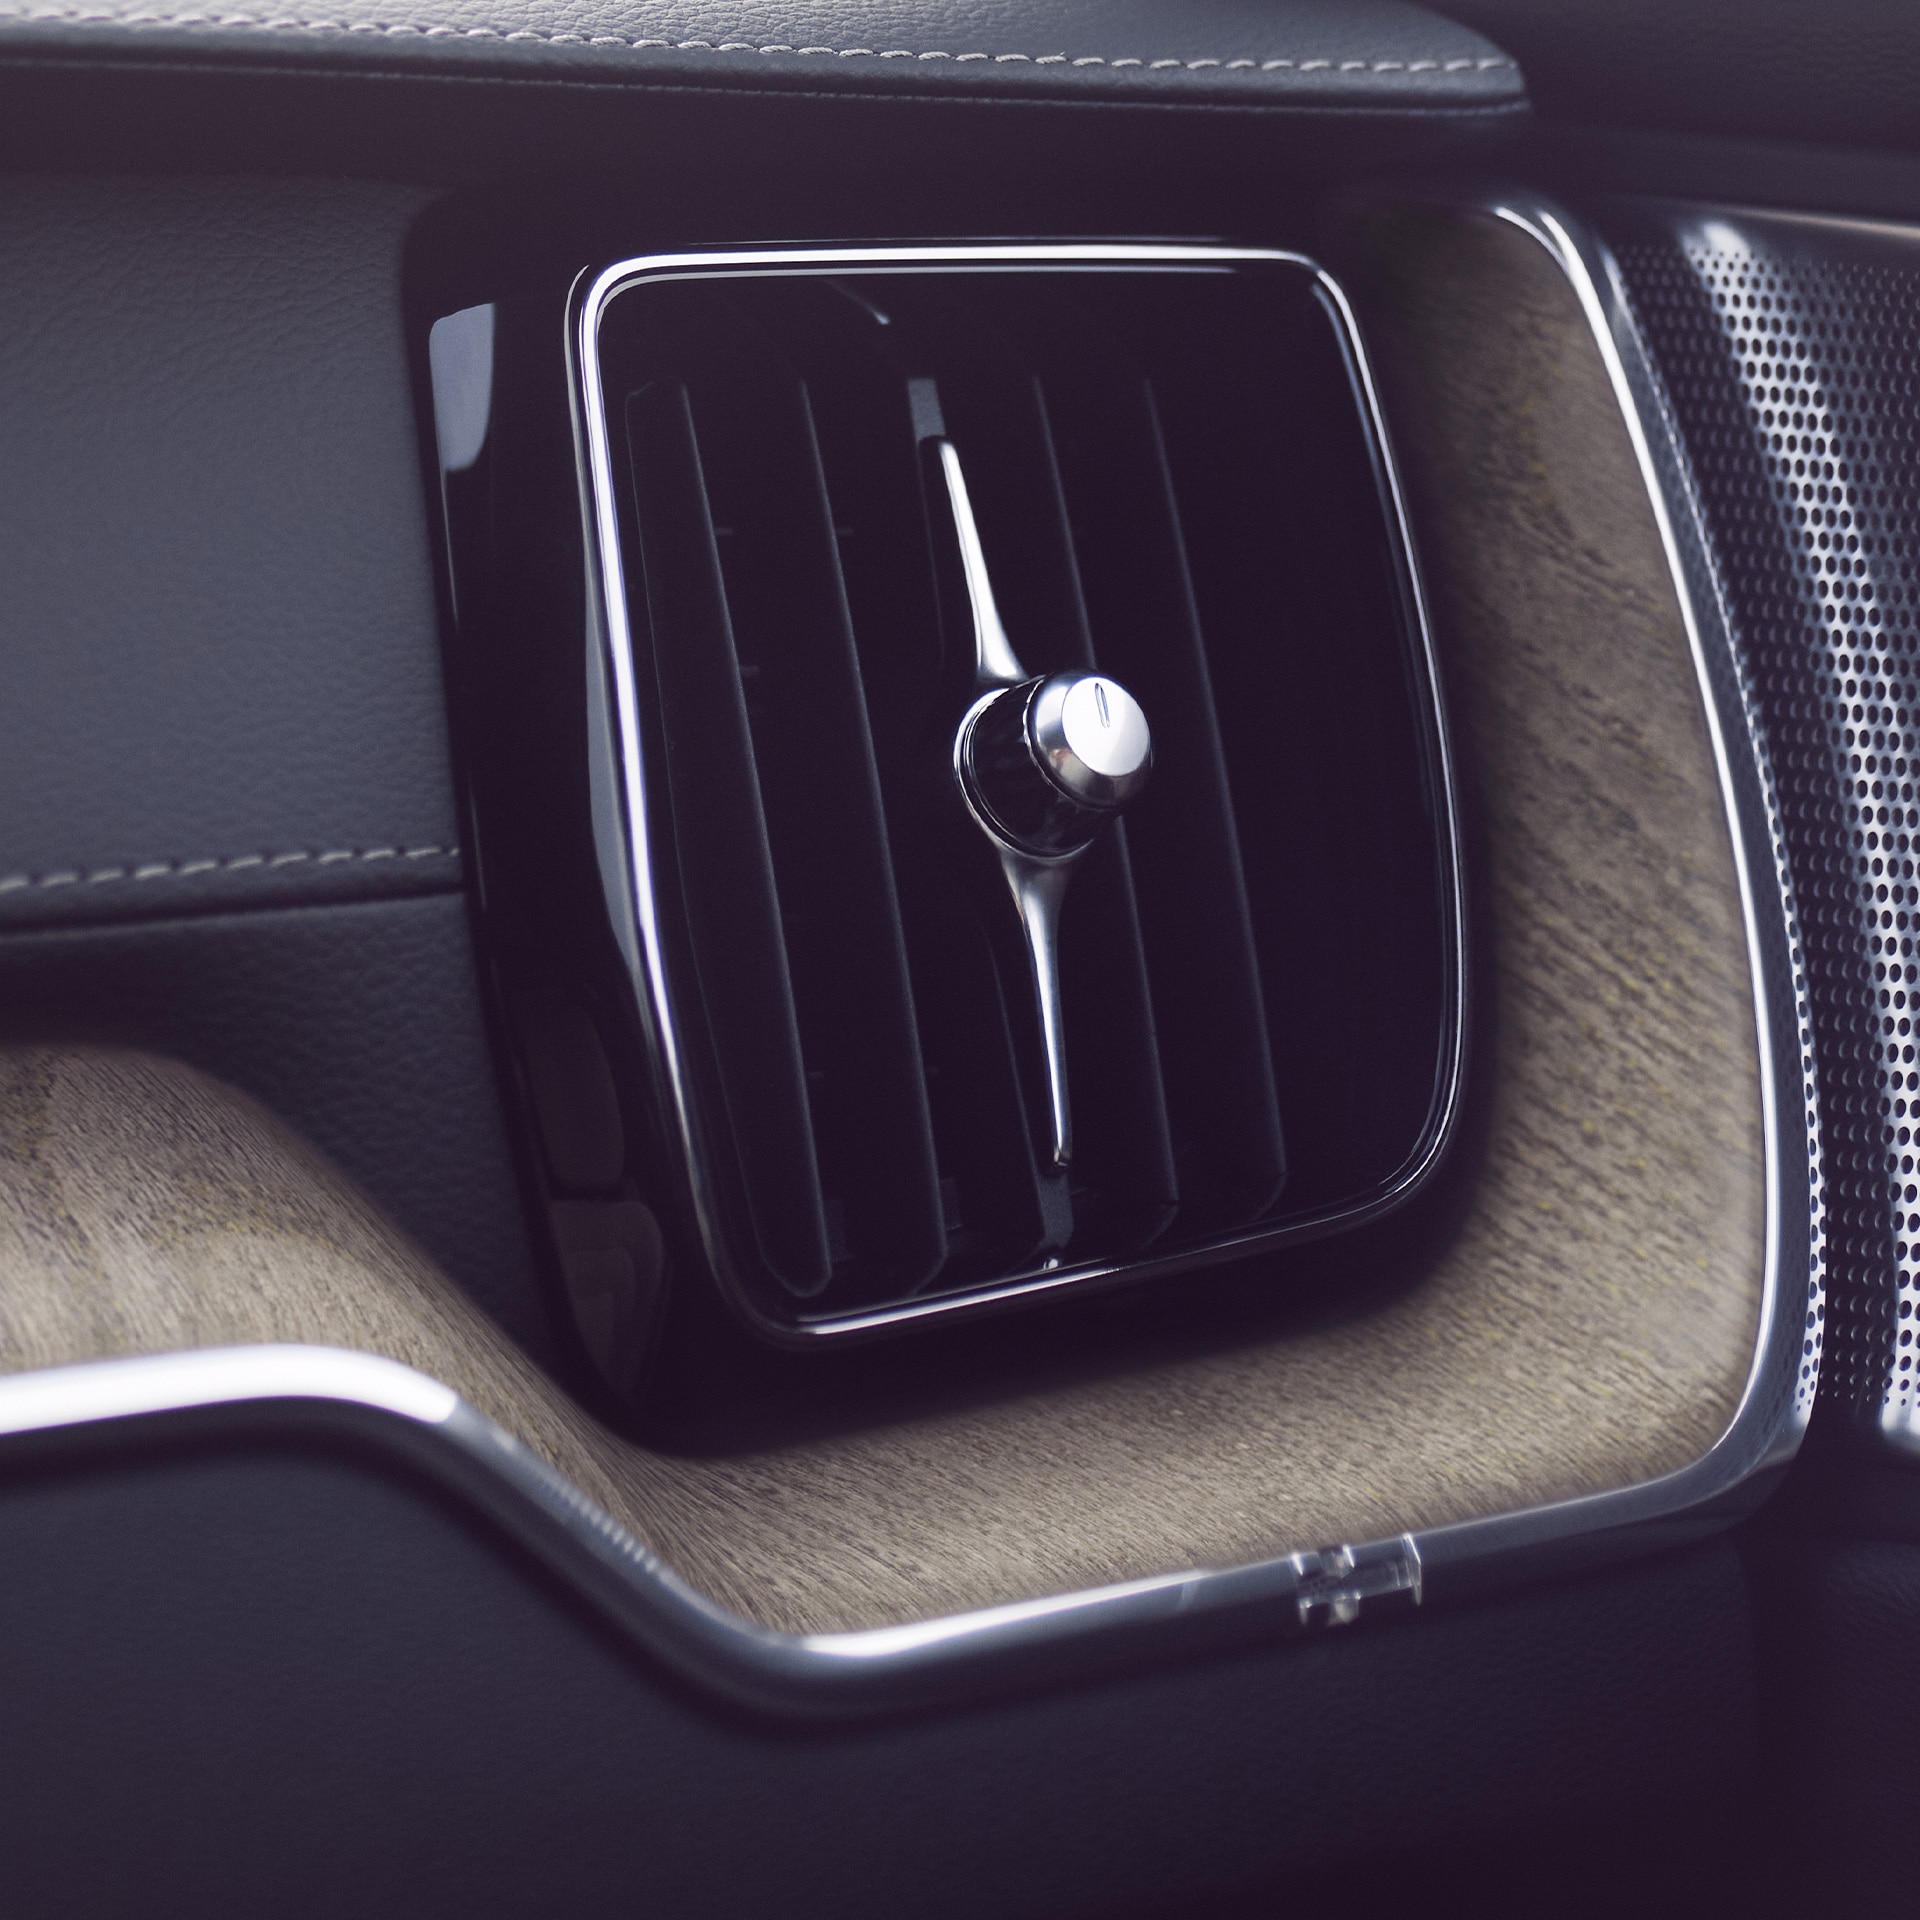 Vďaka pokročilému systému čistenia vzduchu si v SUV Volvo XC60 môžete s celou svojou posádkou užívať čistejší a zdravší vzduch.